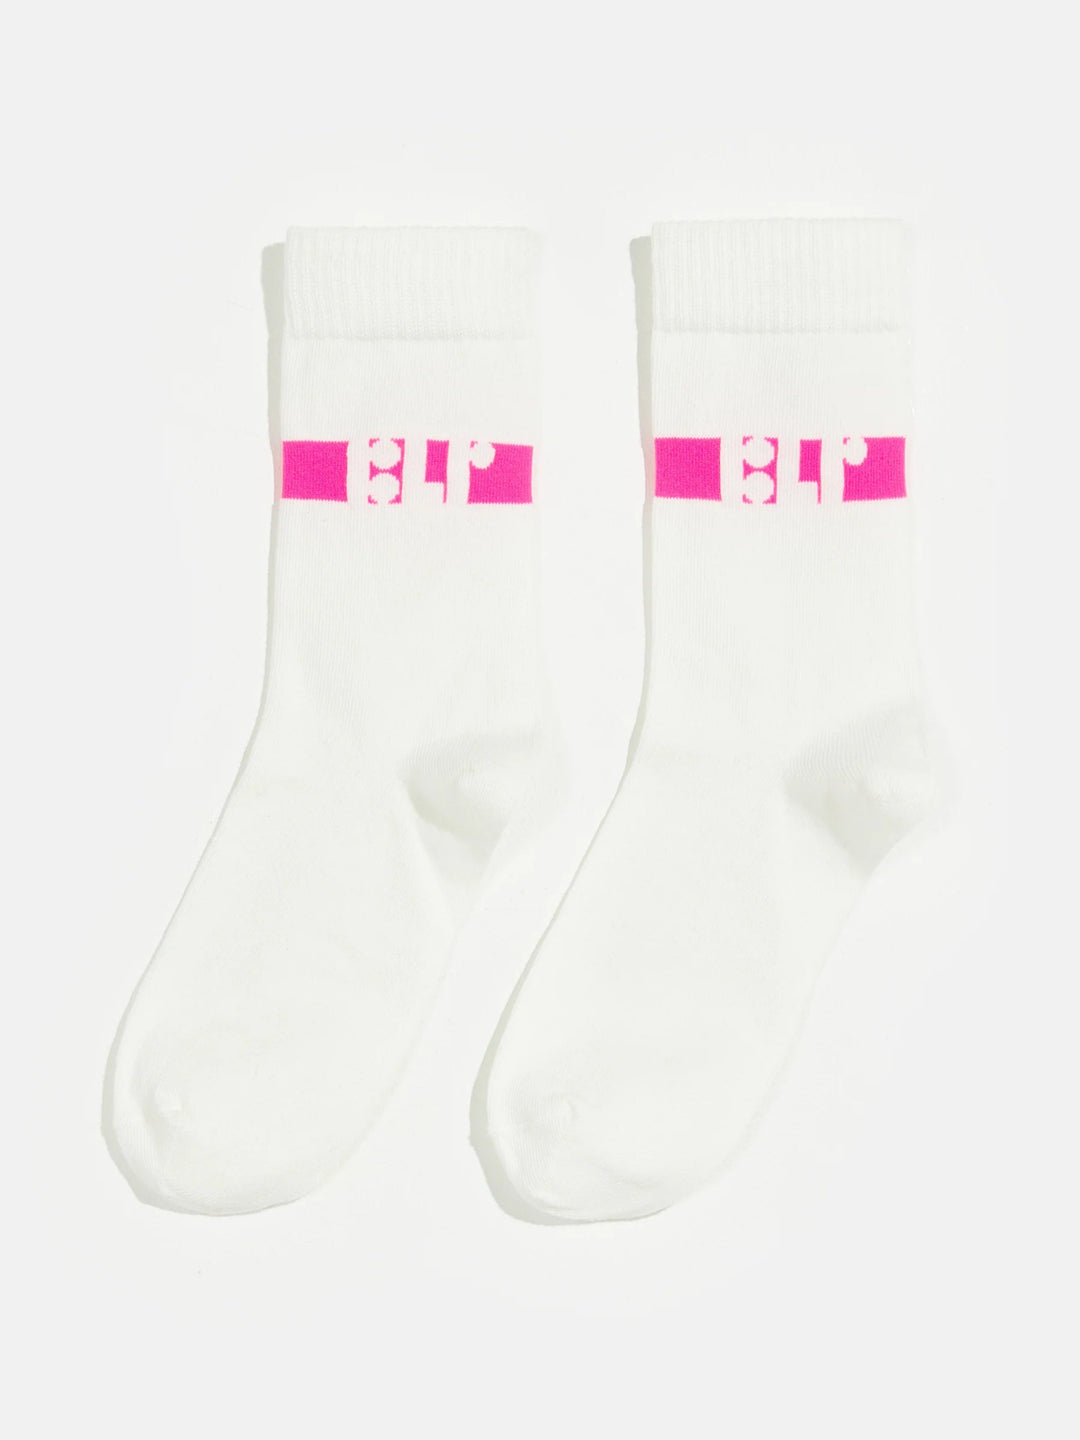 Belair Socks - Off White - Posh New York